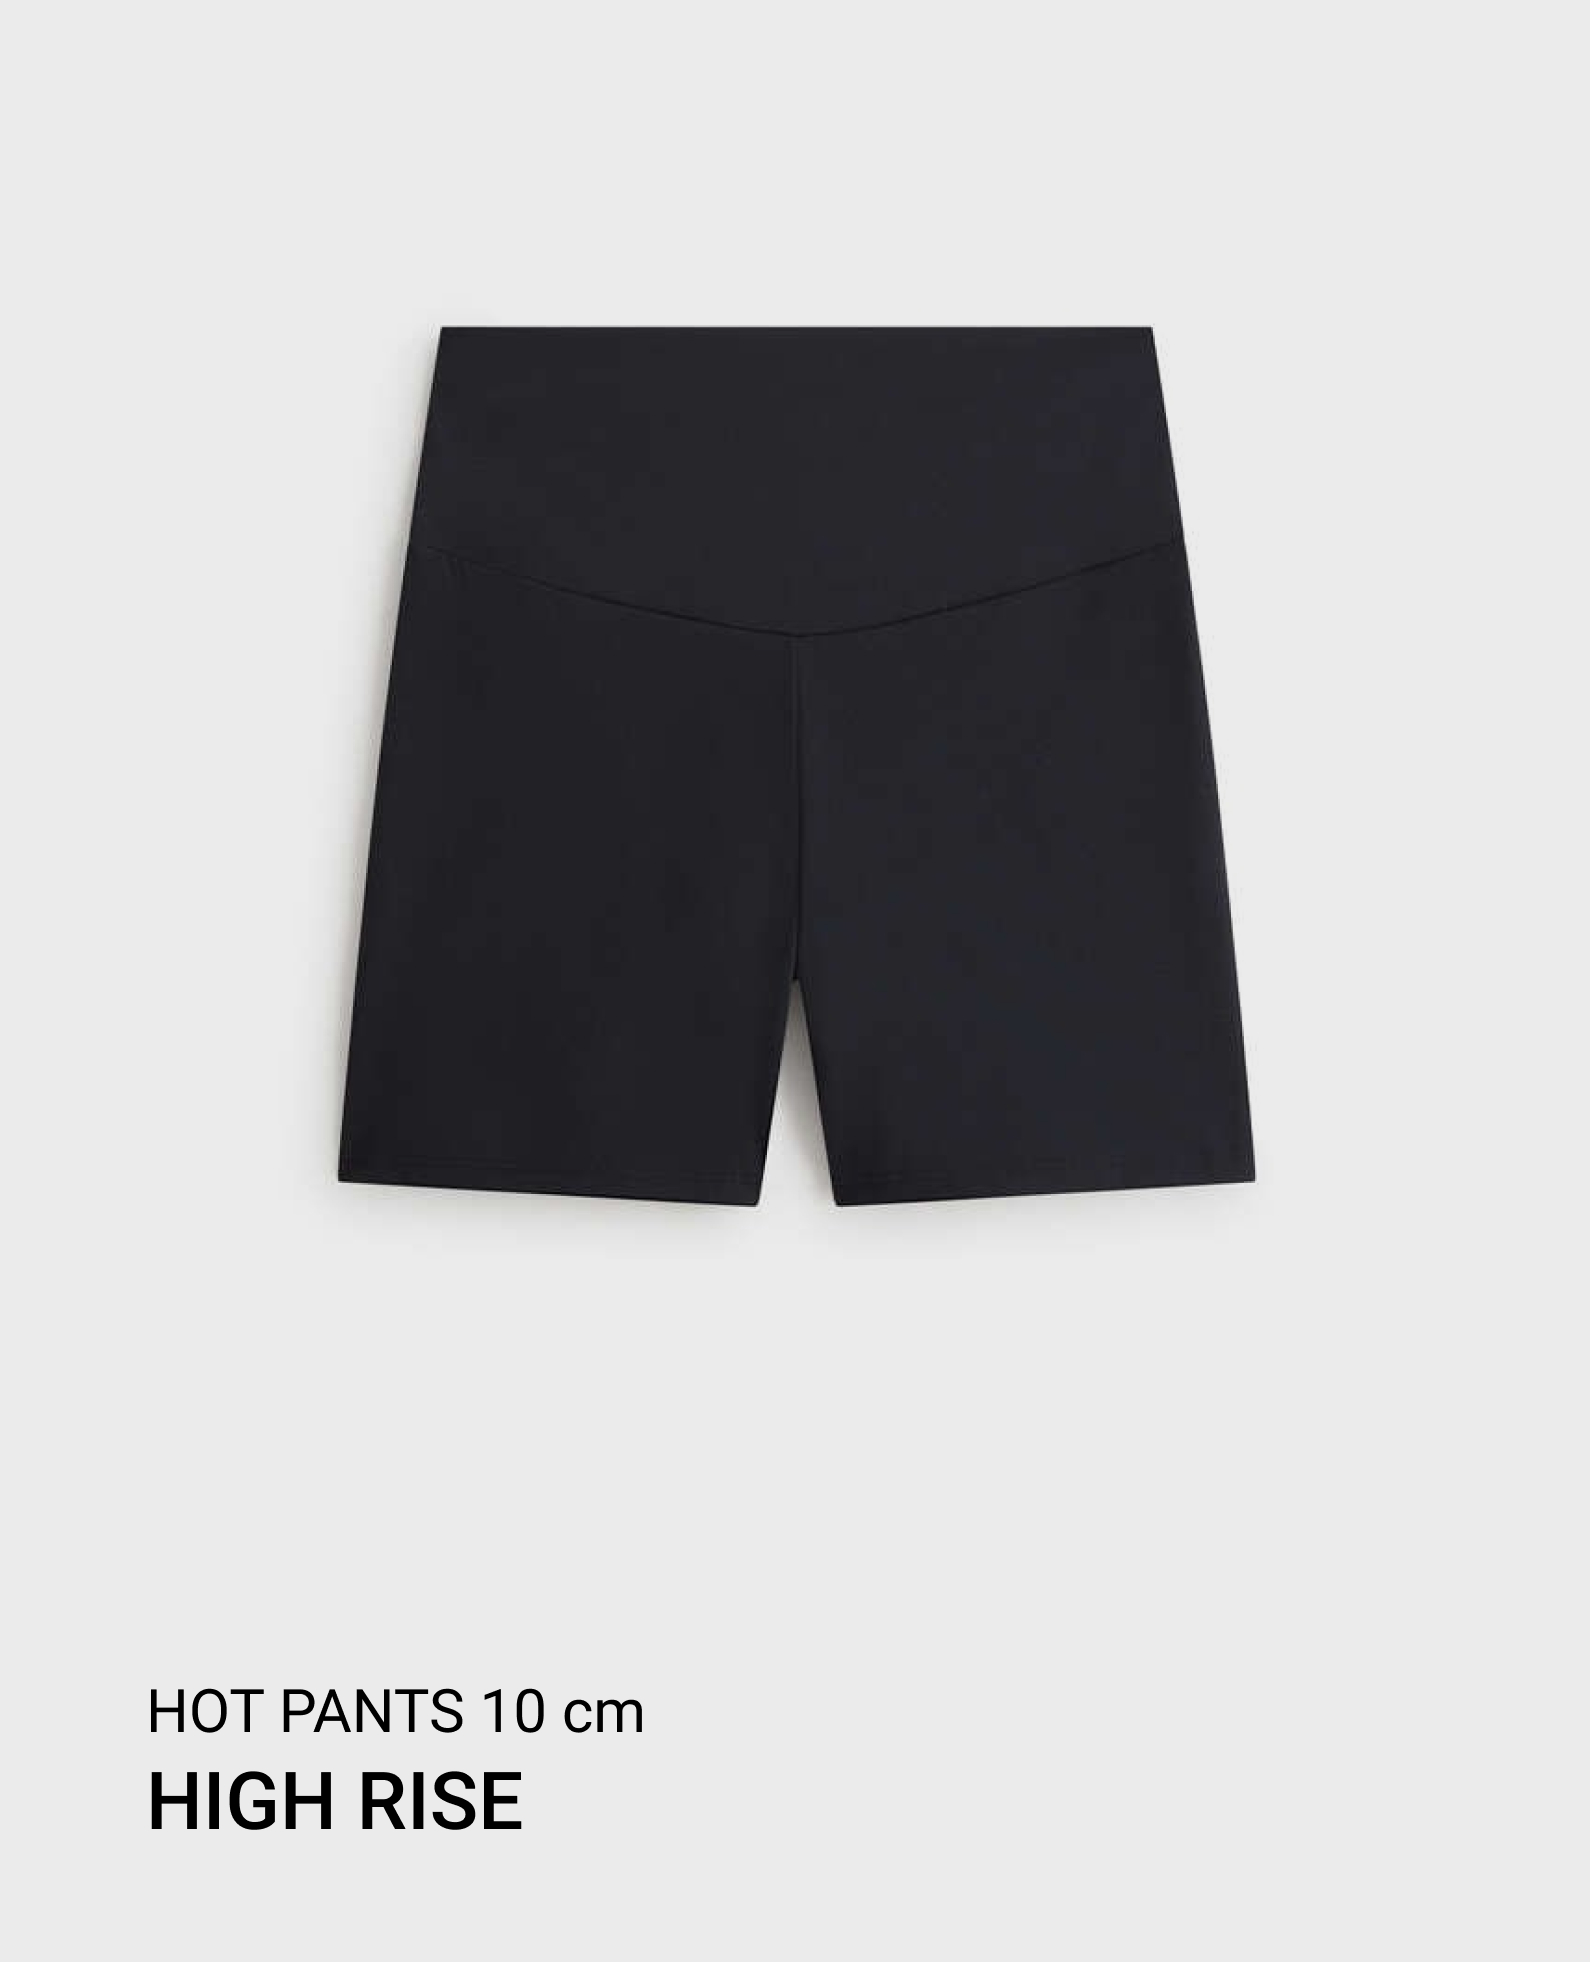 Hot pants high rise comfortlux 10 cm